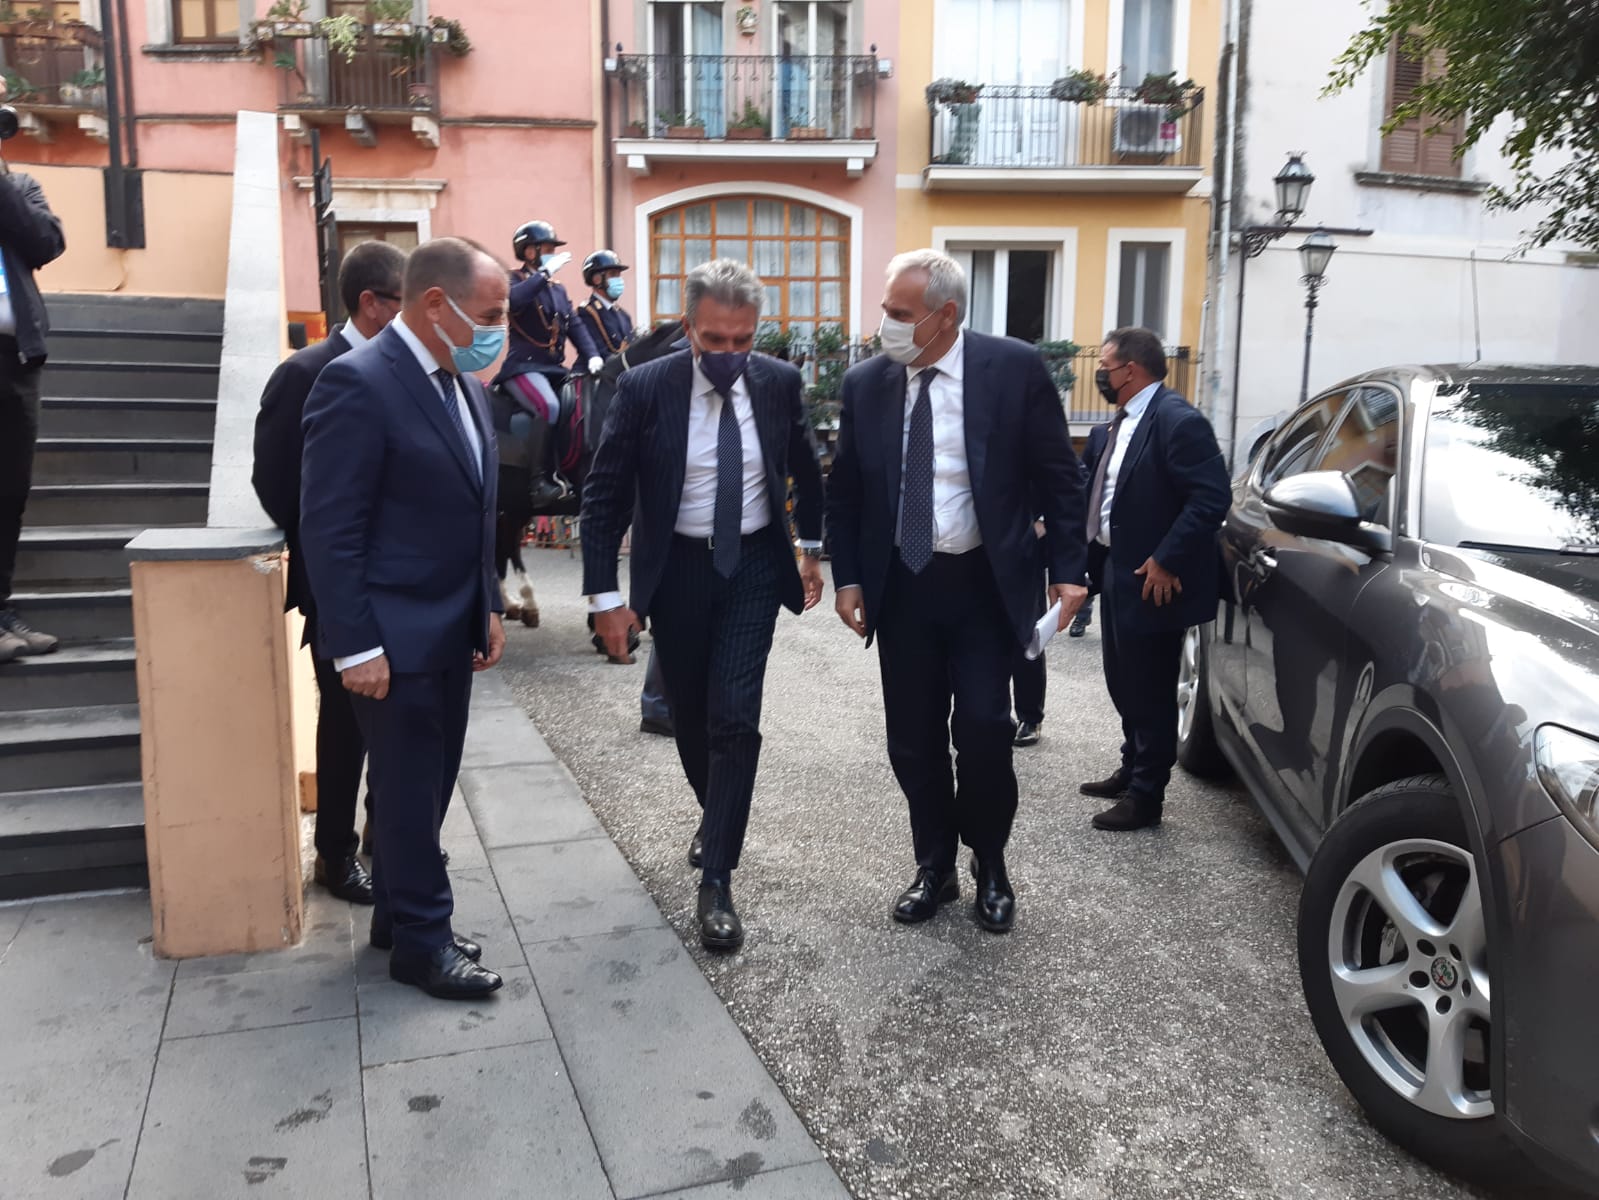 Il convegno a Taormina sul tema “Sicurezza, innovazione e complementarietà”